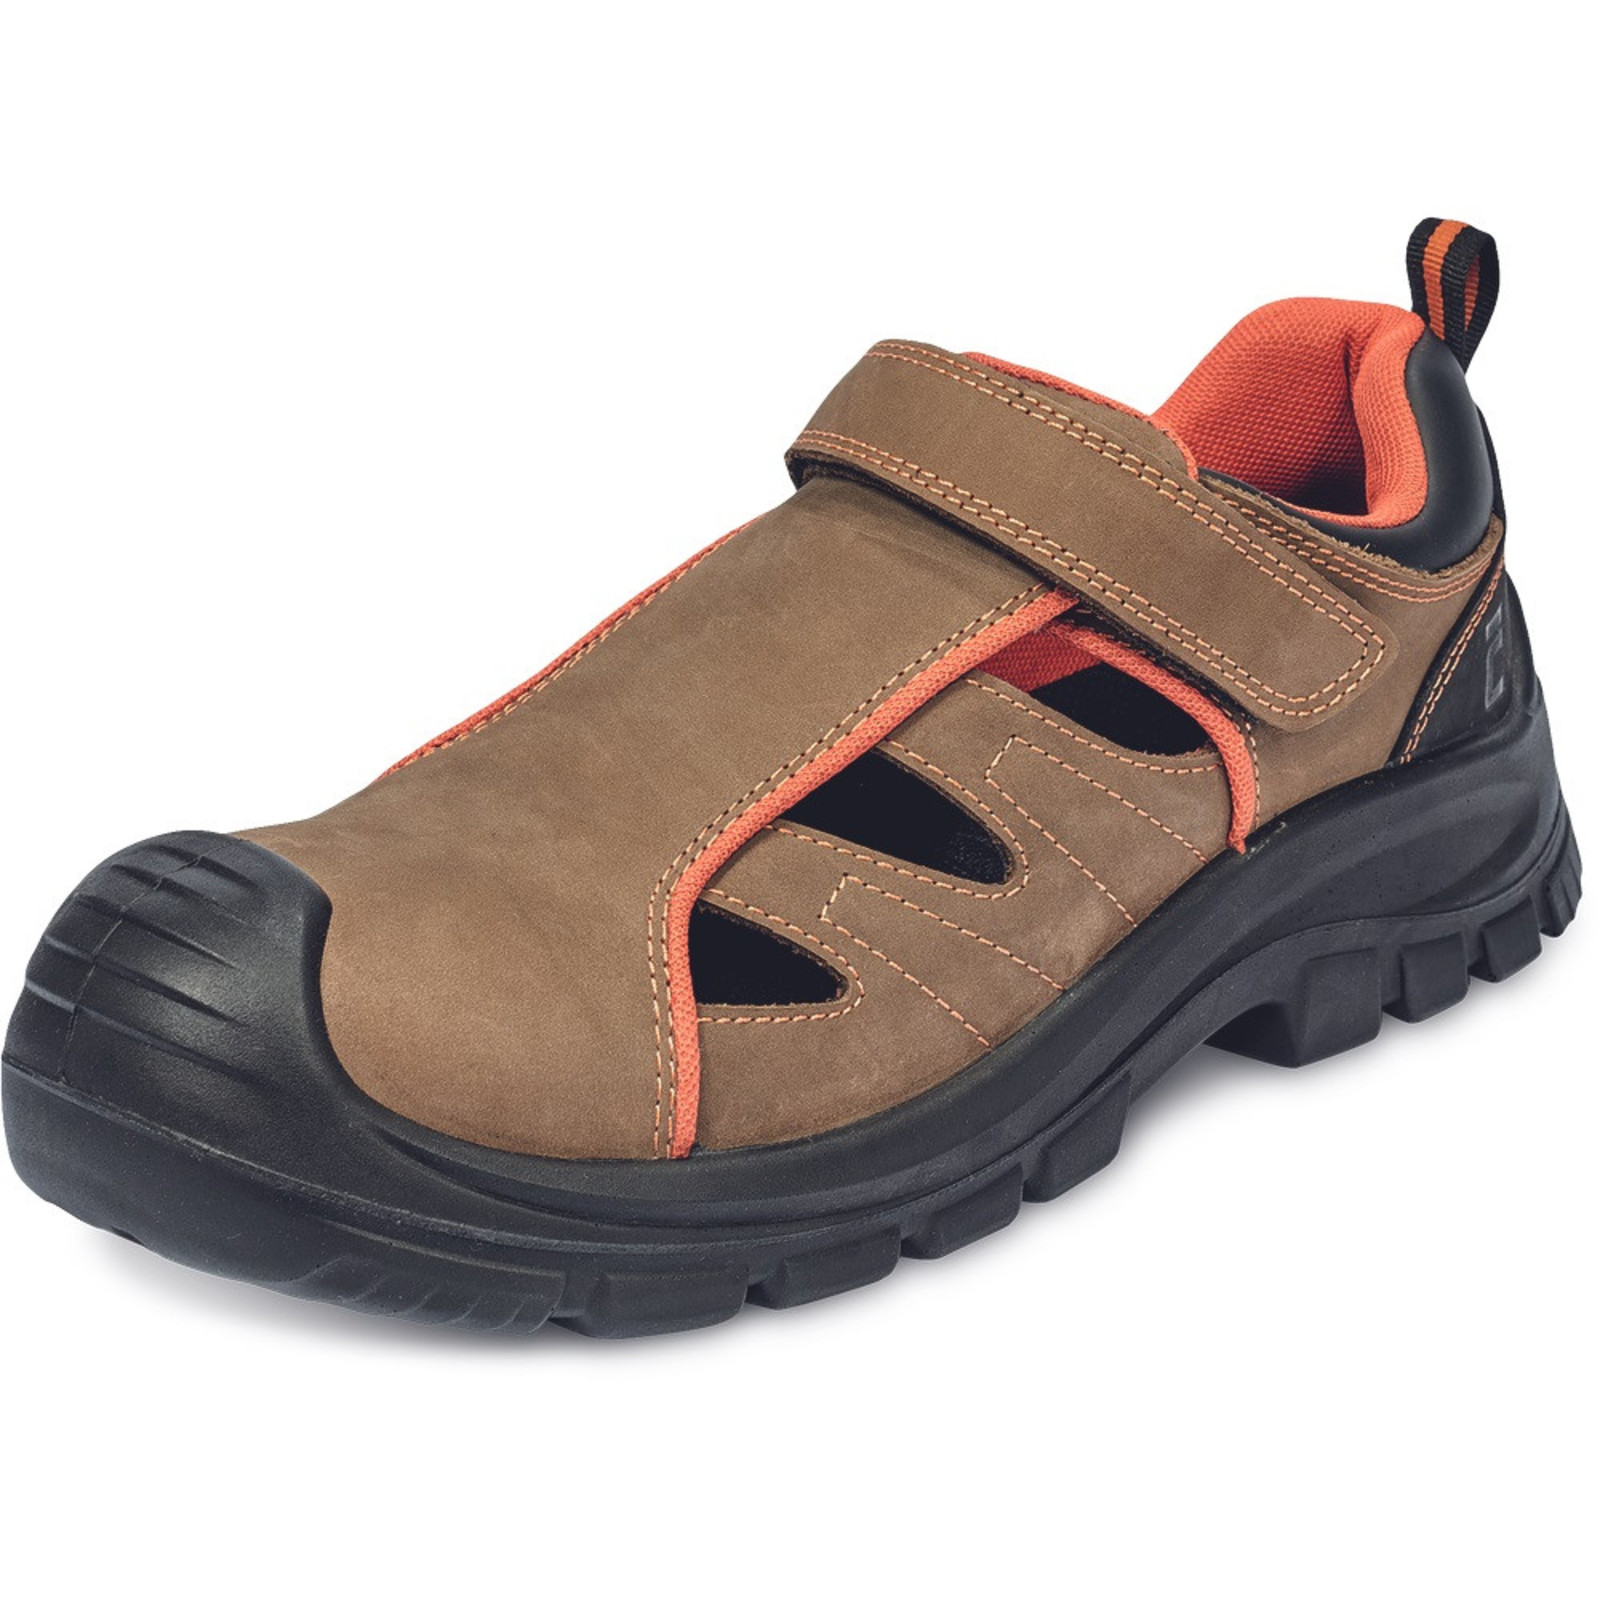 Bezpečnostné sandále Cerva Derril MF S1P SRC - veľkosť: 40, farba: hnedá